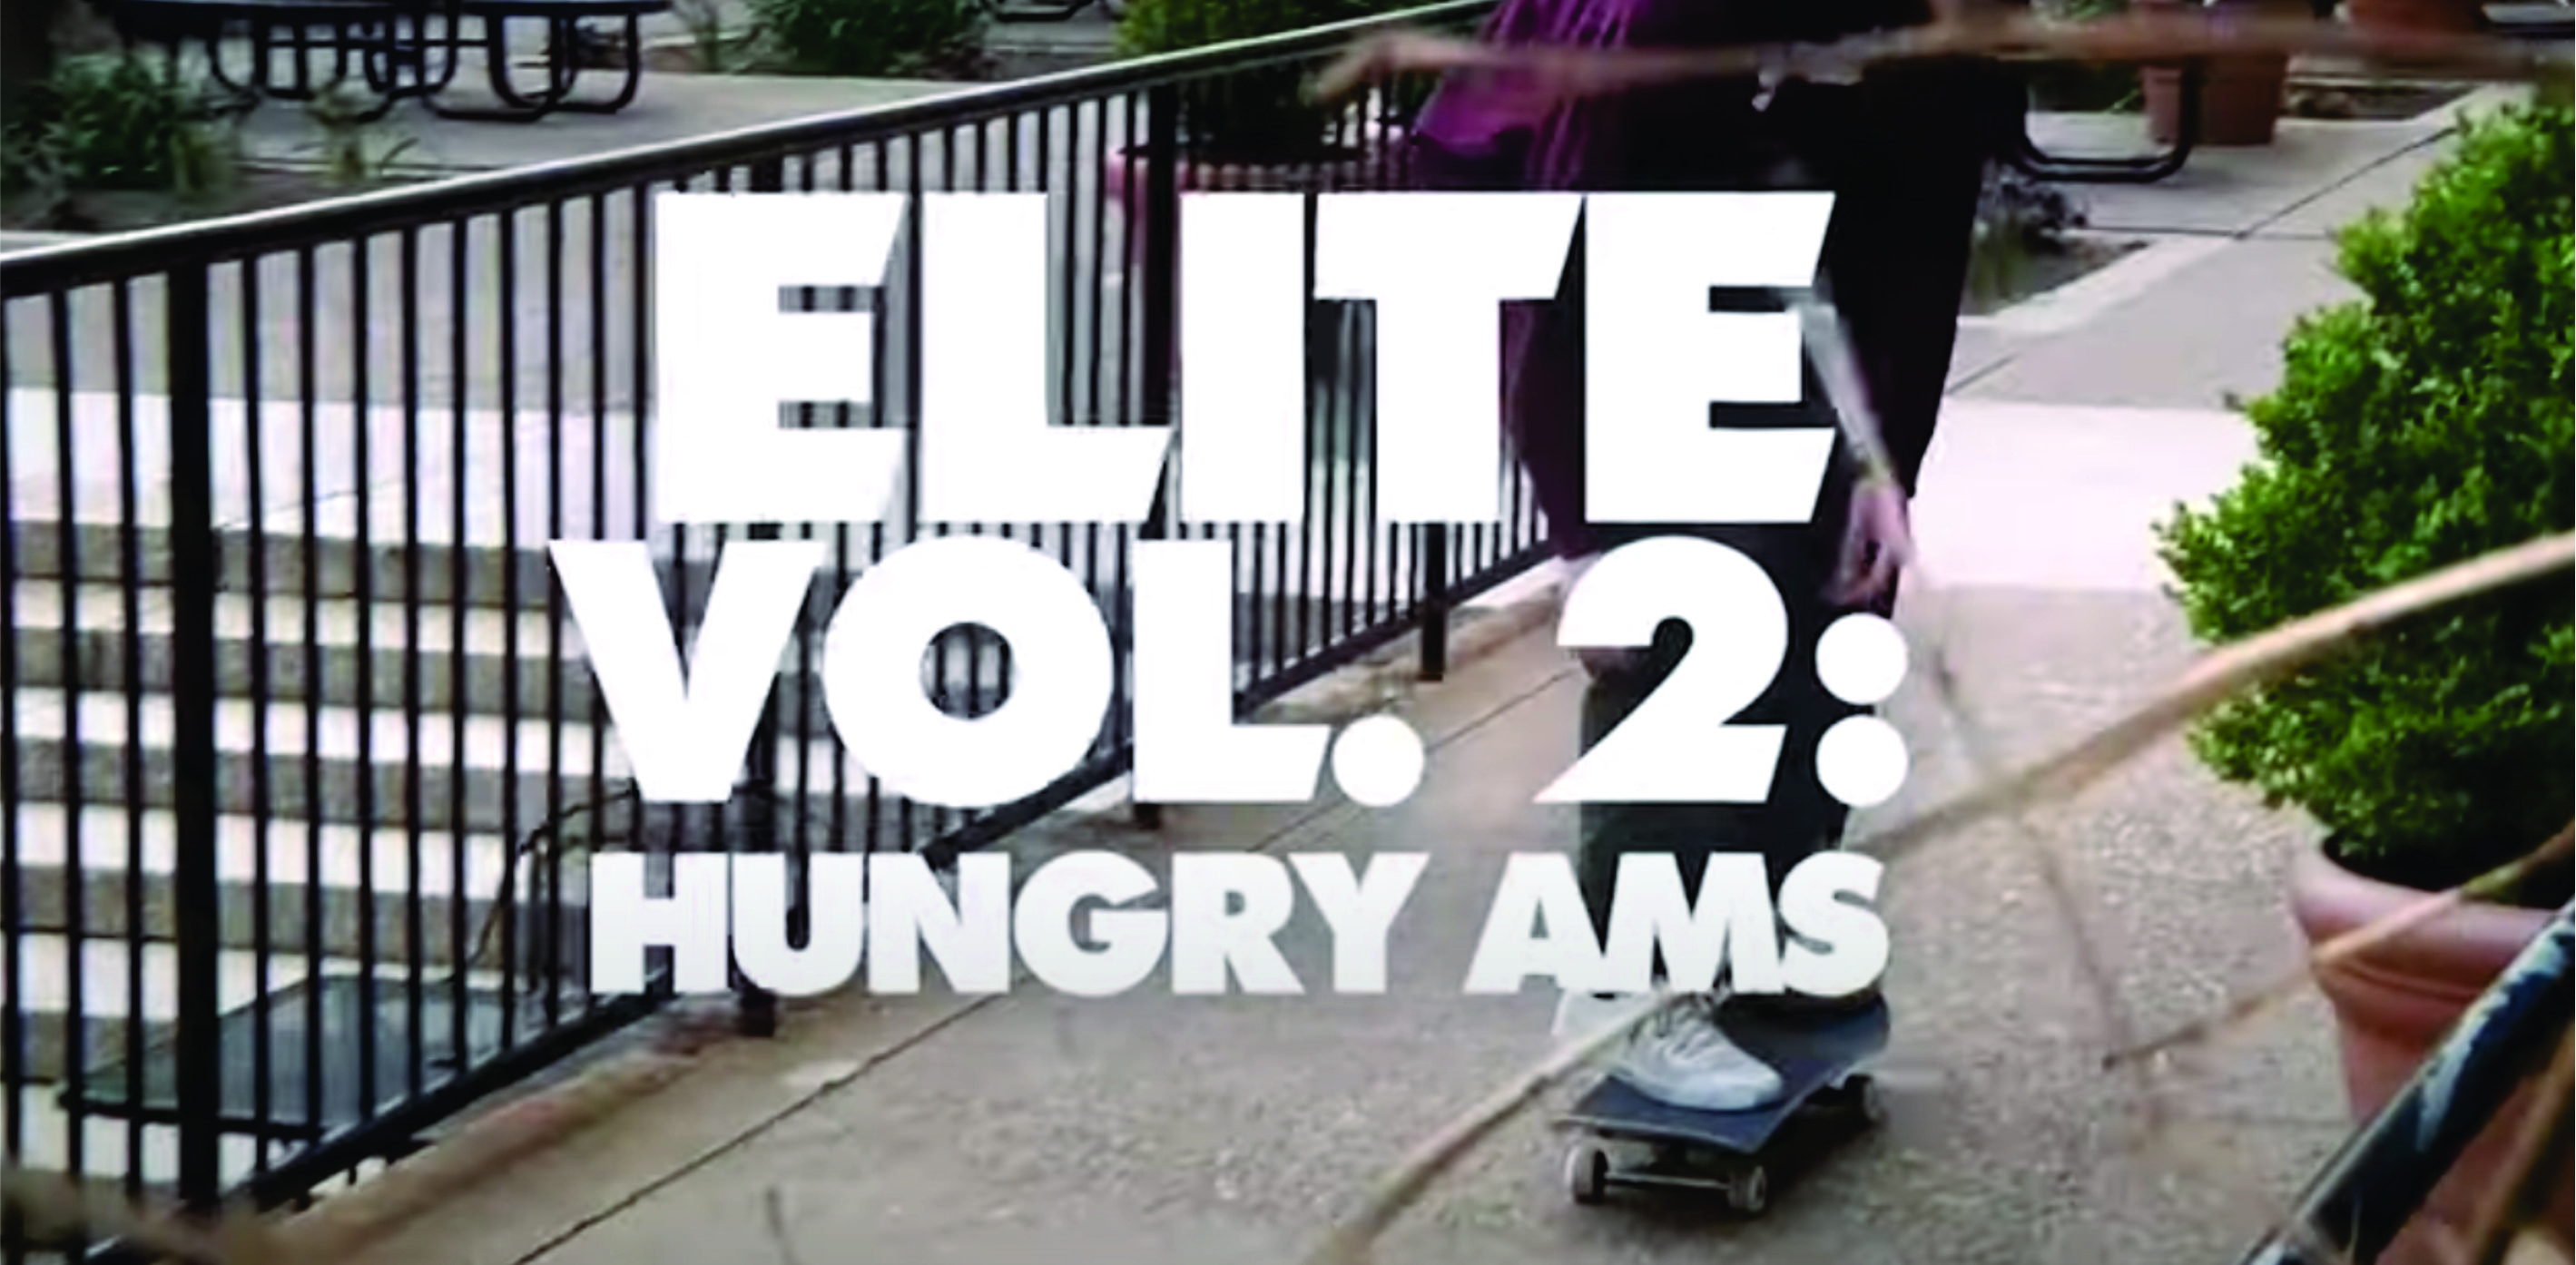 OJ Wheels - Elite Vol 2: Hungry AM's cover